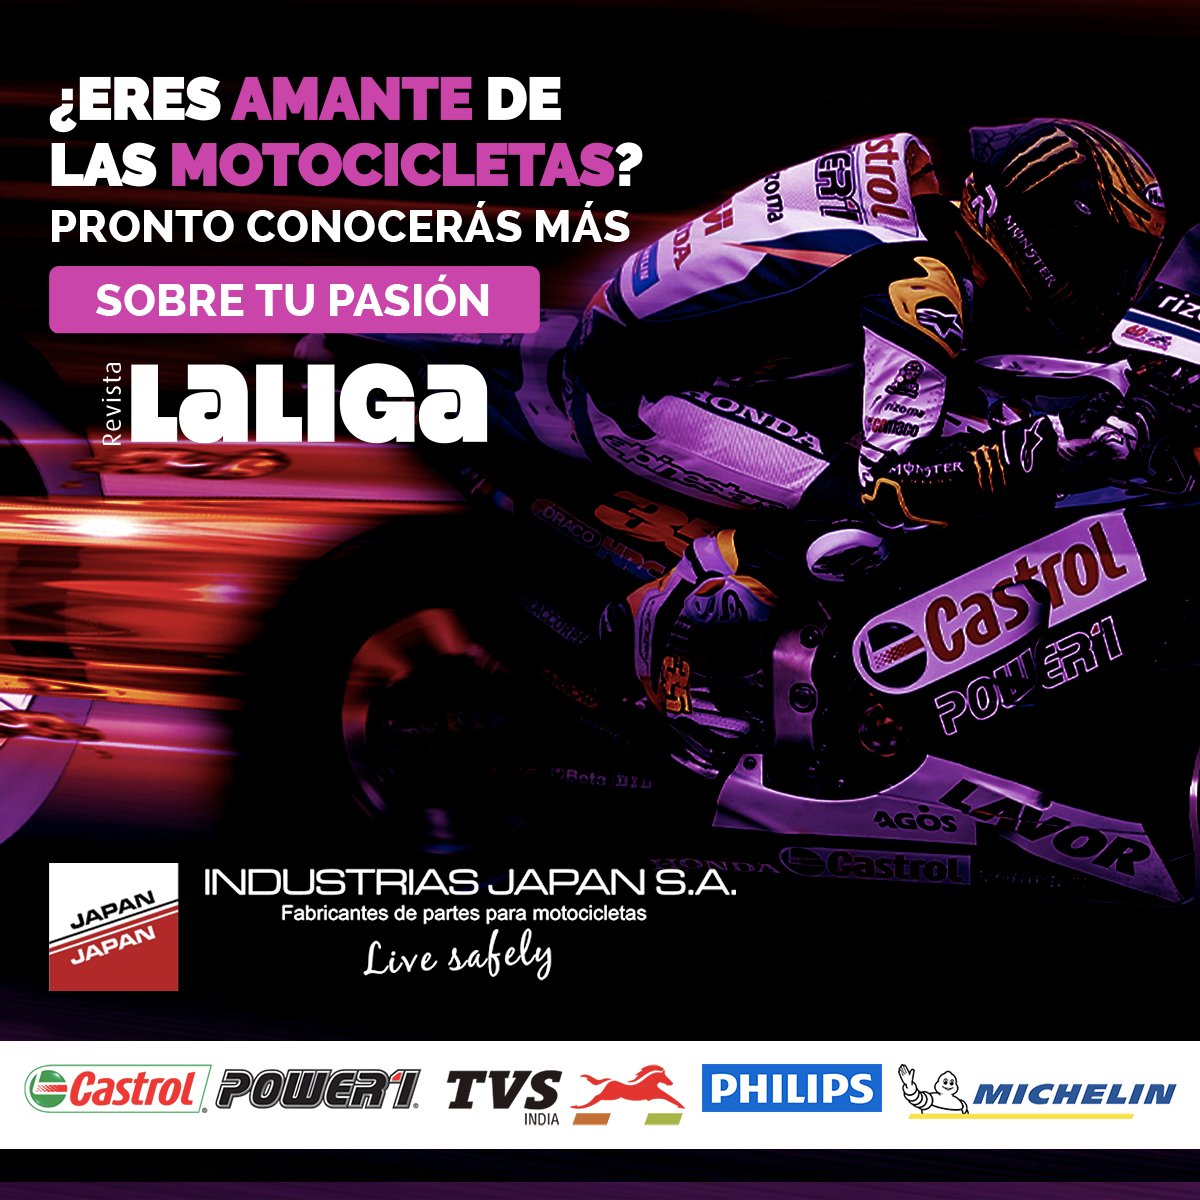 Visita revistalaliga.com y conoce más acerca de nuestra gran pasión El Motociclismo, al lado de los mejores periodistas deportivos: @titopuccettic @RicardoHenaoRCN @MartinUrruty